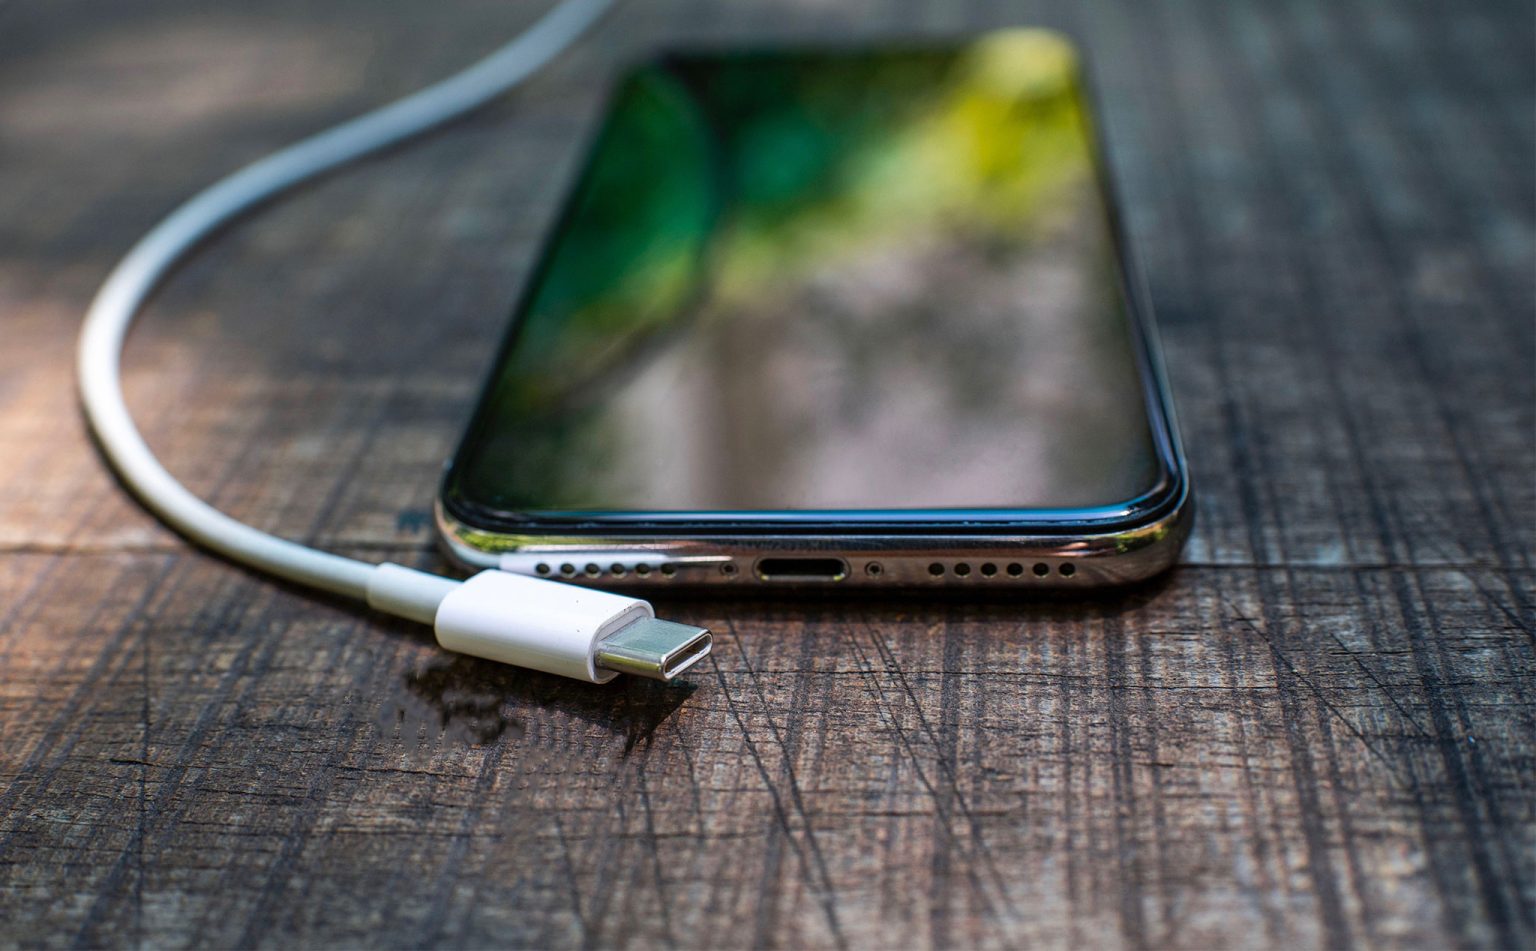 2023 có thể đánh dấu chấm hết của cổng Lightning trên iPhone do Apple bắt đầu chuyển sang USB-C